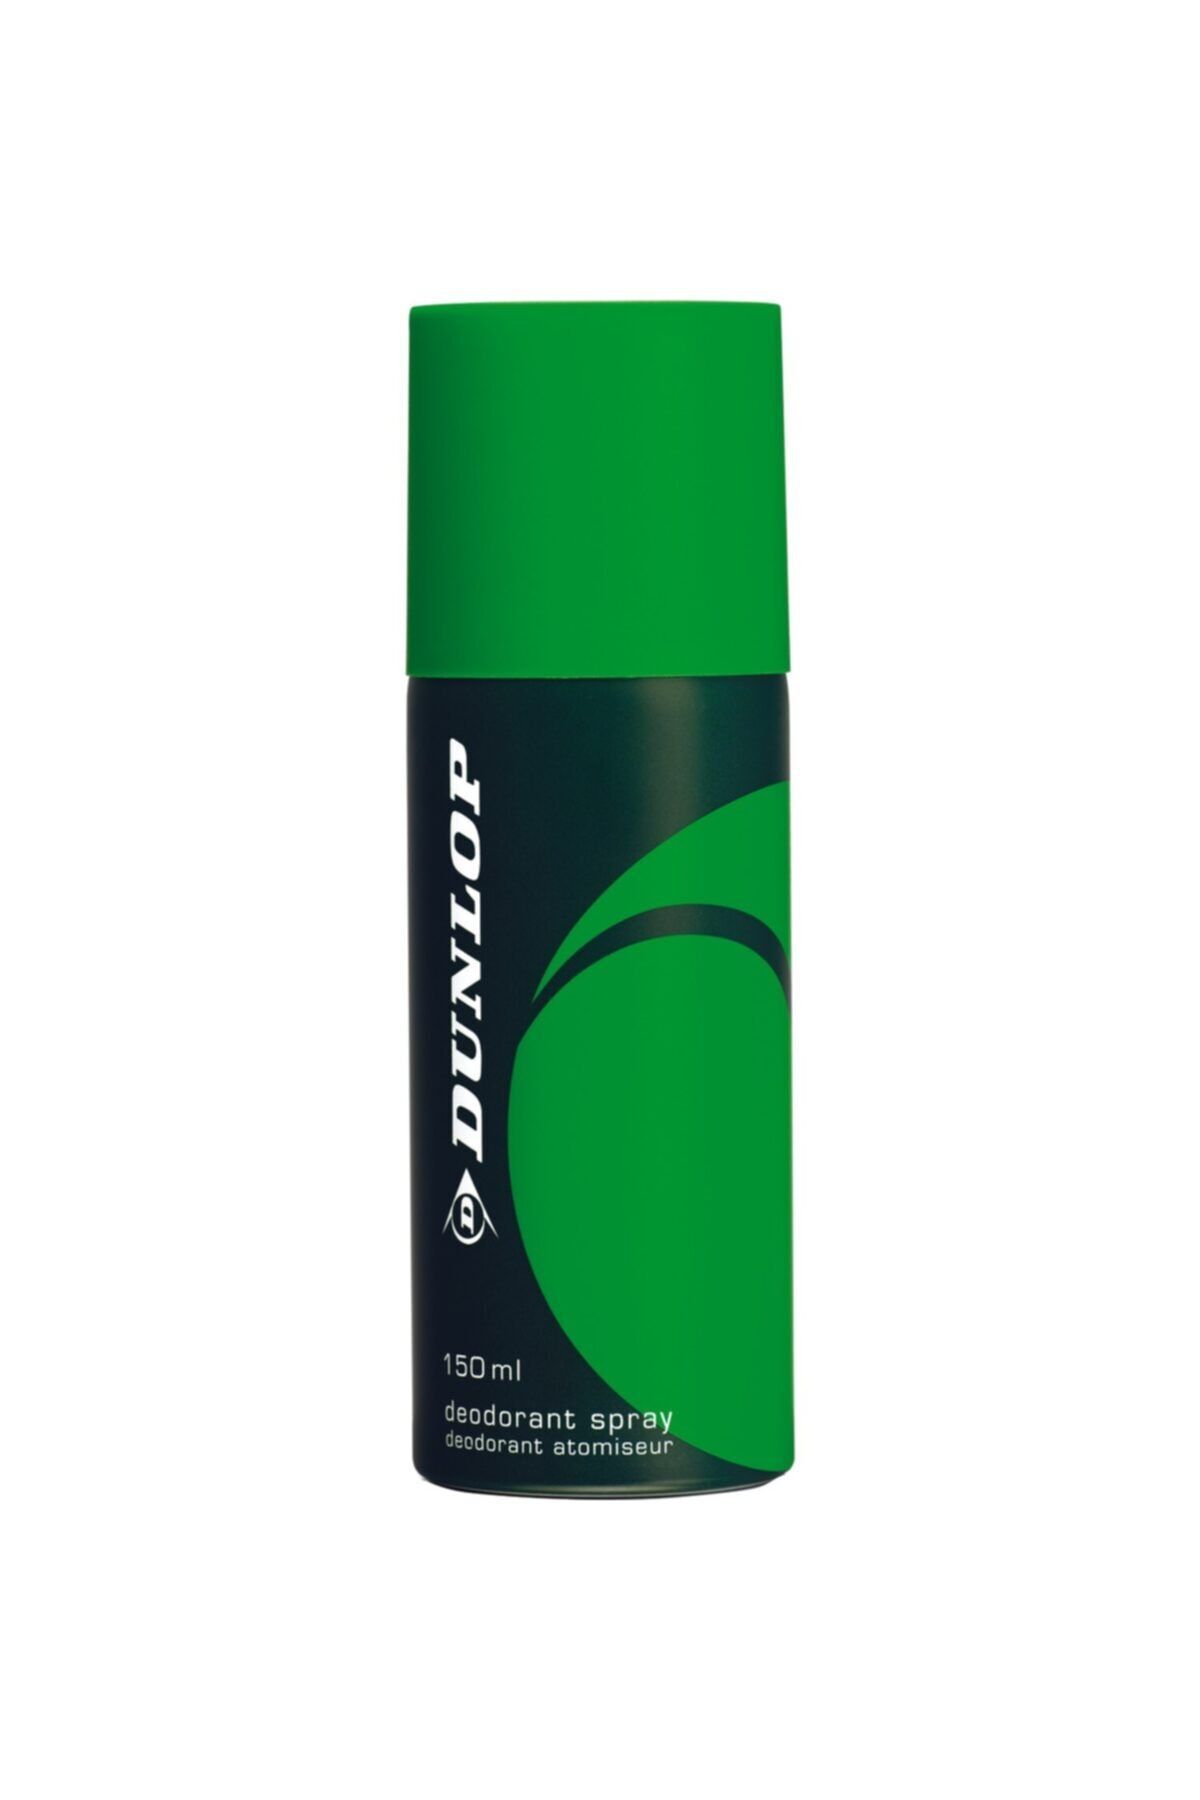 Dunlop Yeşil Erkek Deodorant 150 ml Klasik